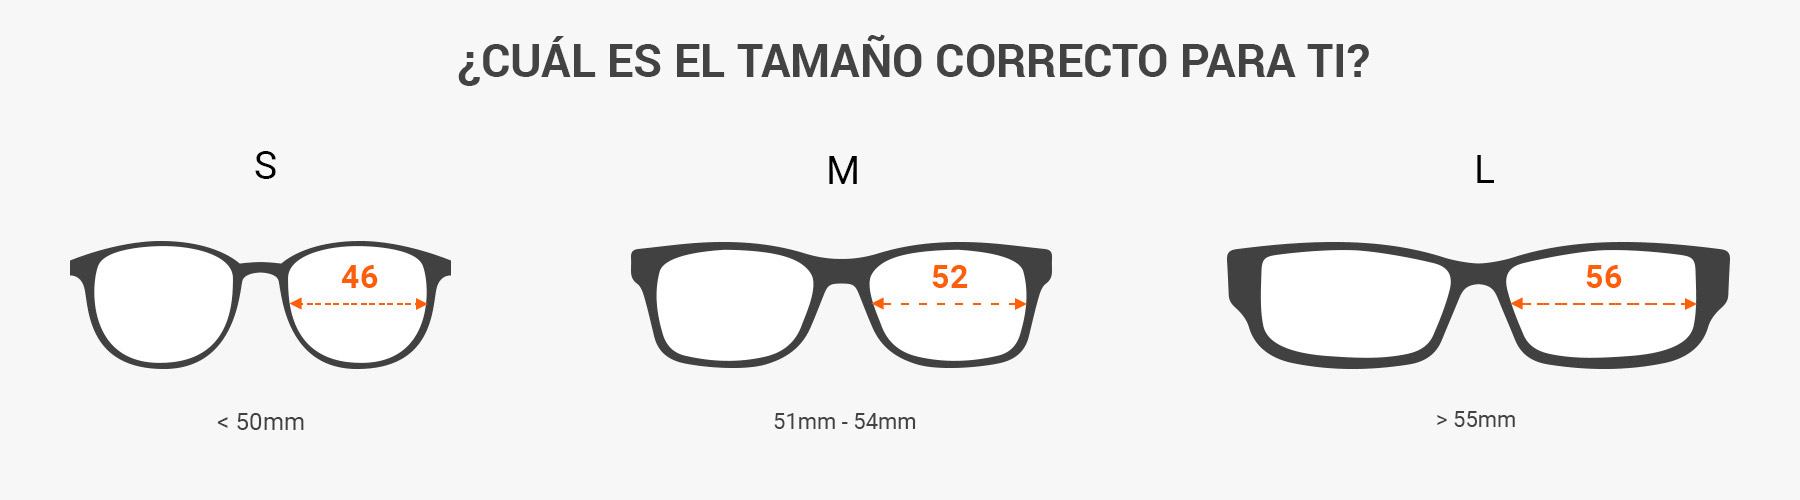 Cómo leer las medidas de las gafas de sol. Medir el tamaño de las gafas de sol con una regla.